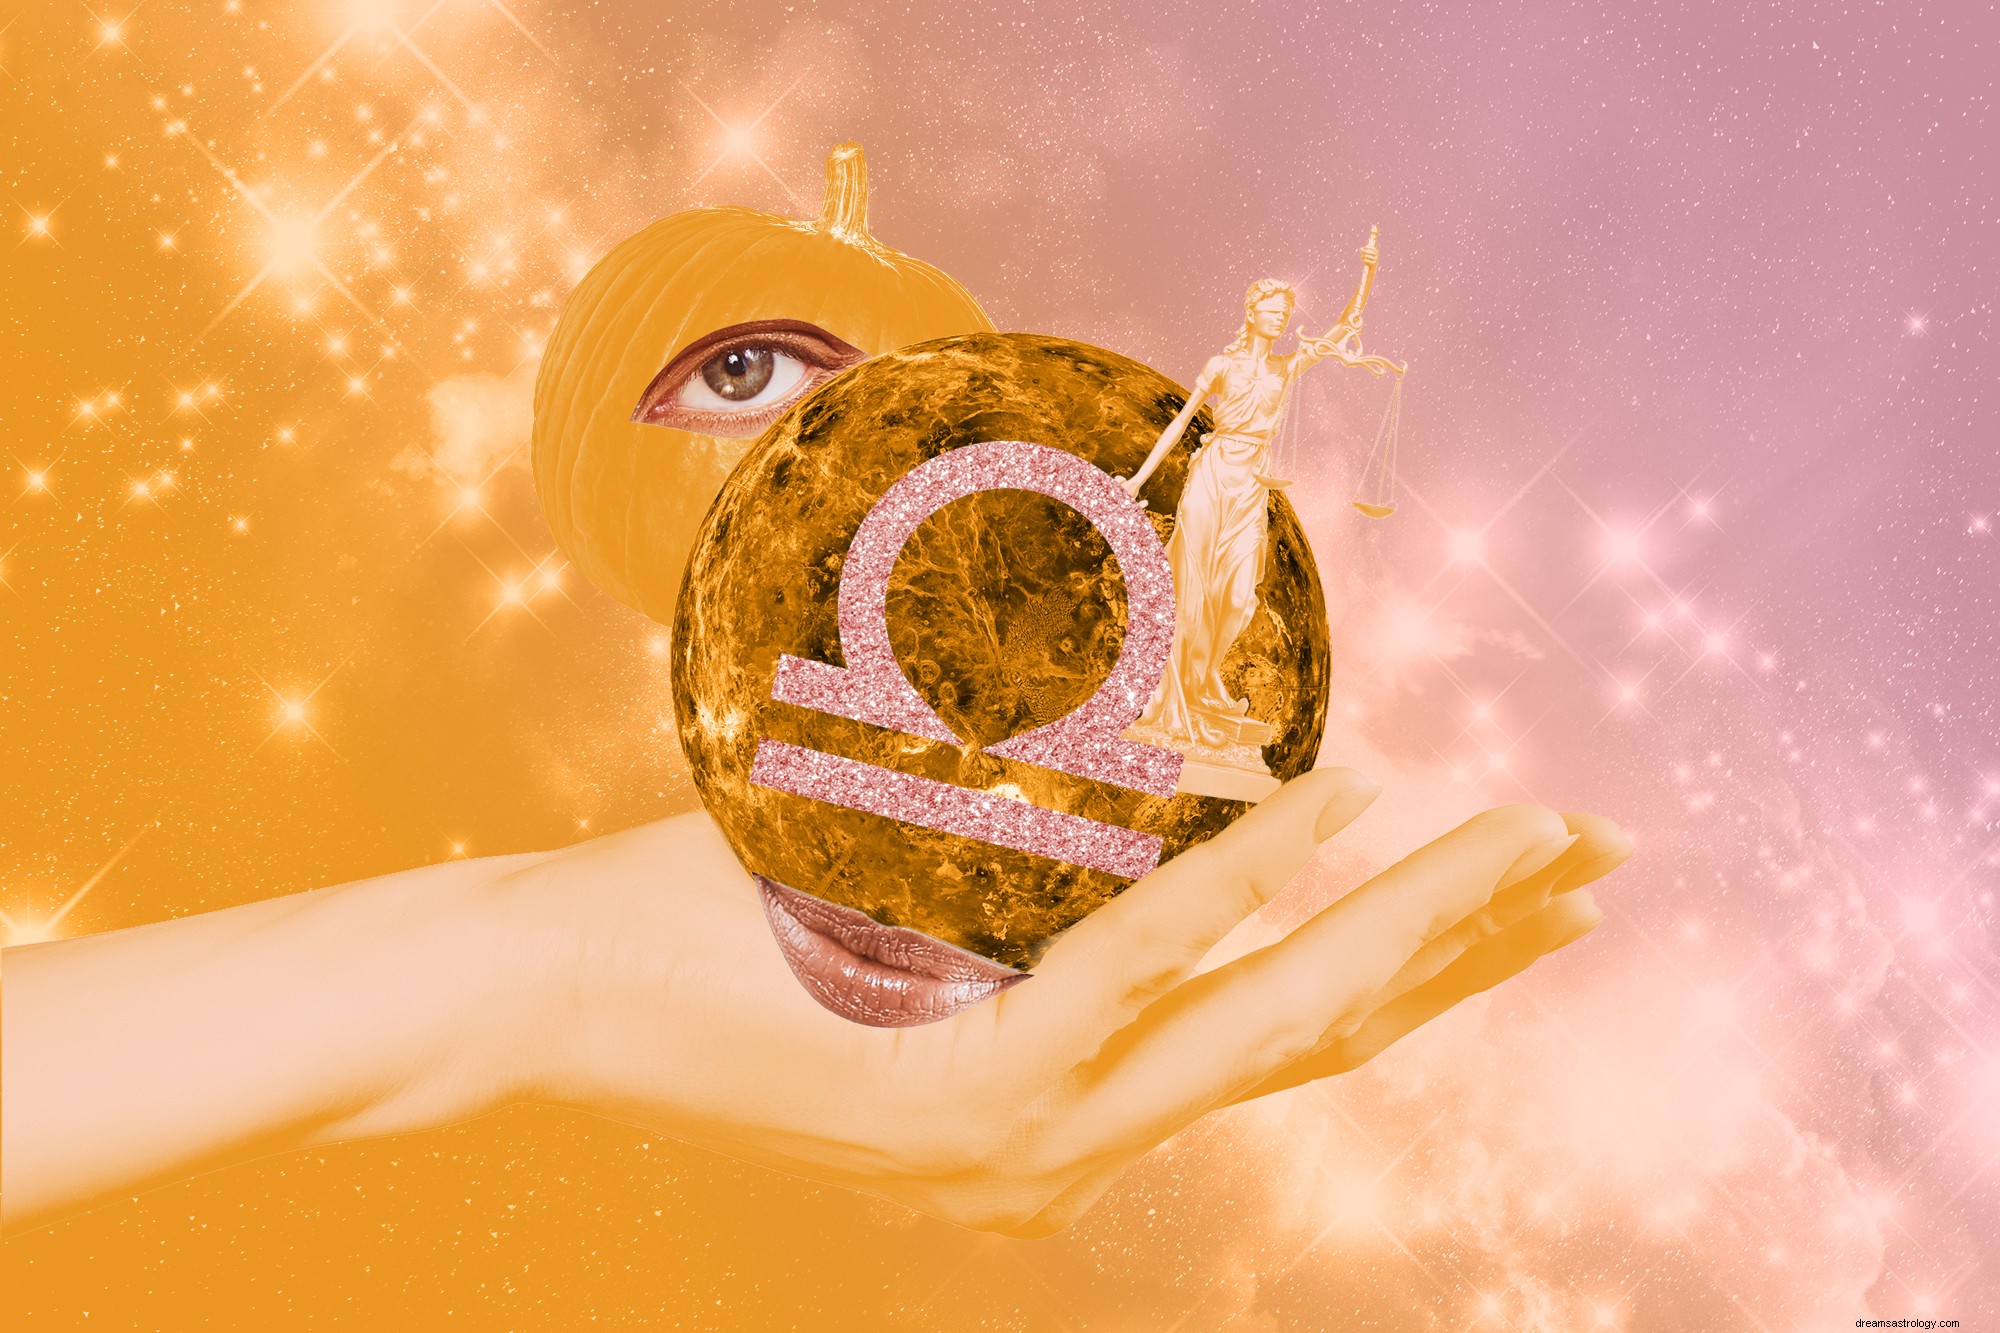 Uw horoscoop voor gezondheid, liefde en succes van oktober 2021 